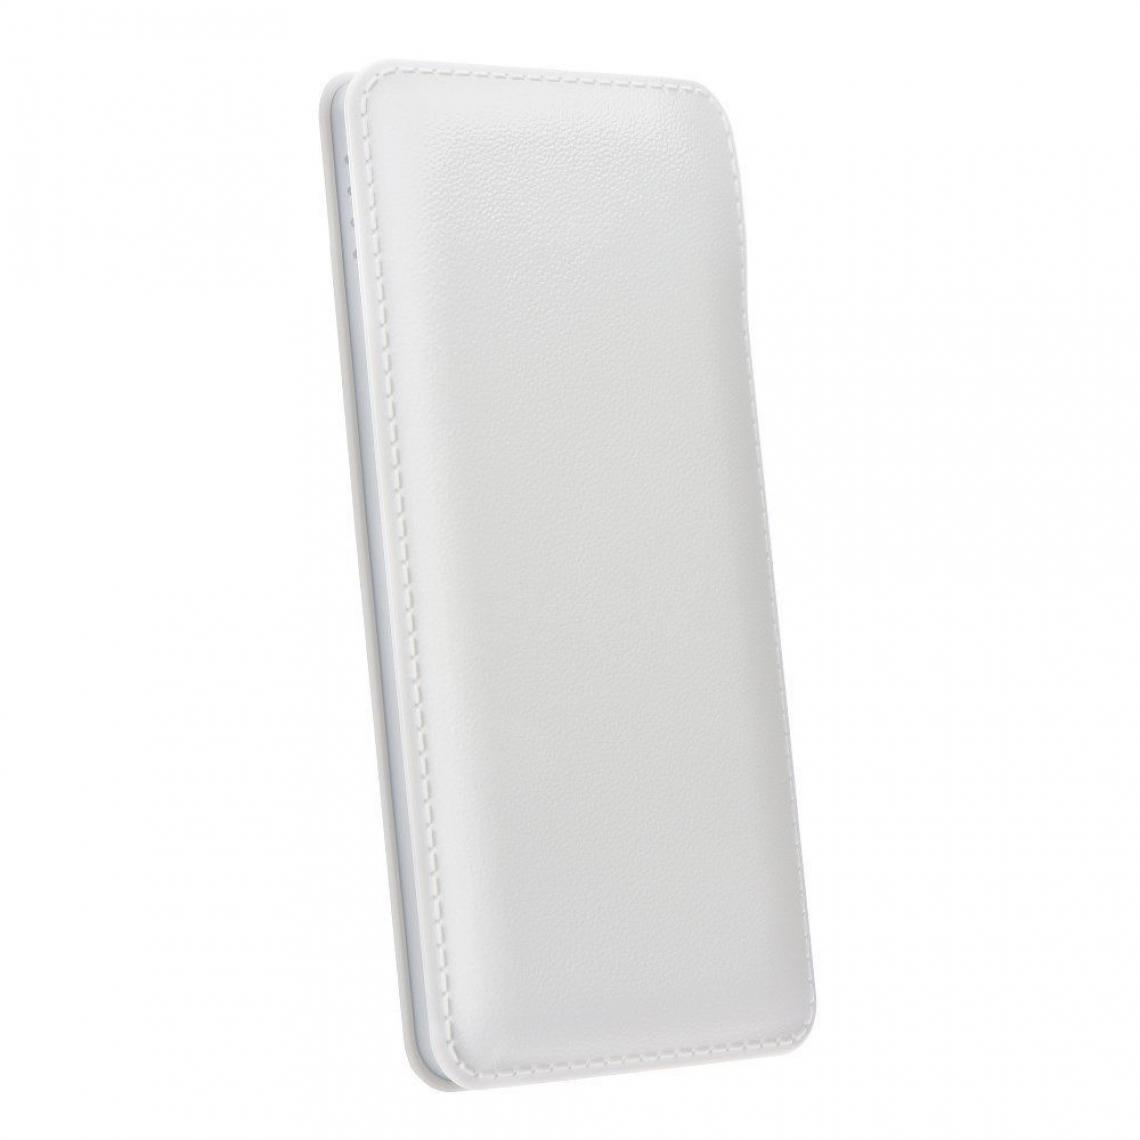 Ozzzo - Chargeur batterie externe 30000 mAh powerbank ozzzo blanc pour OnePlus 8 - Autres accessoires smartphone